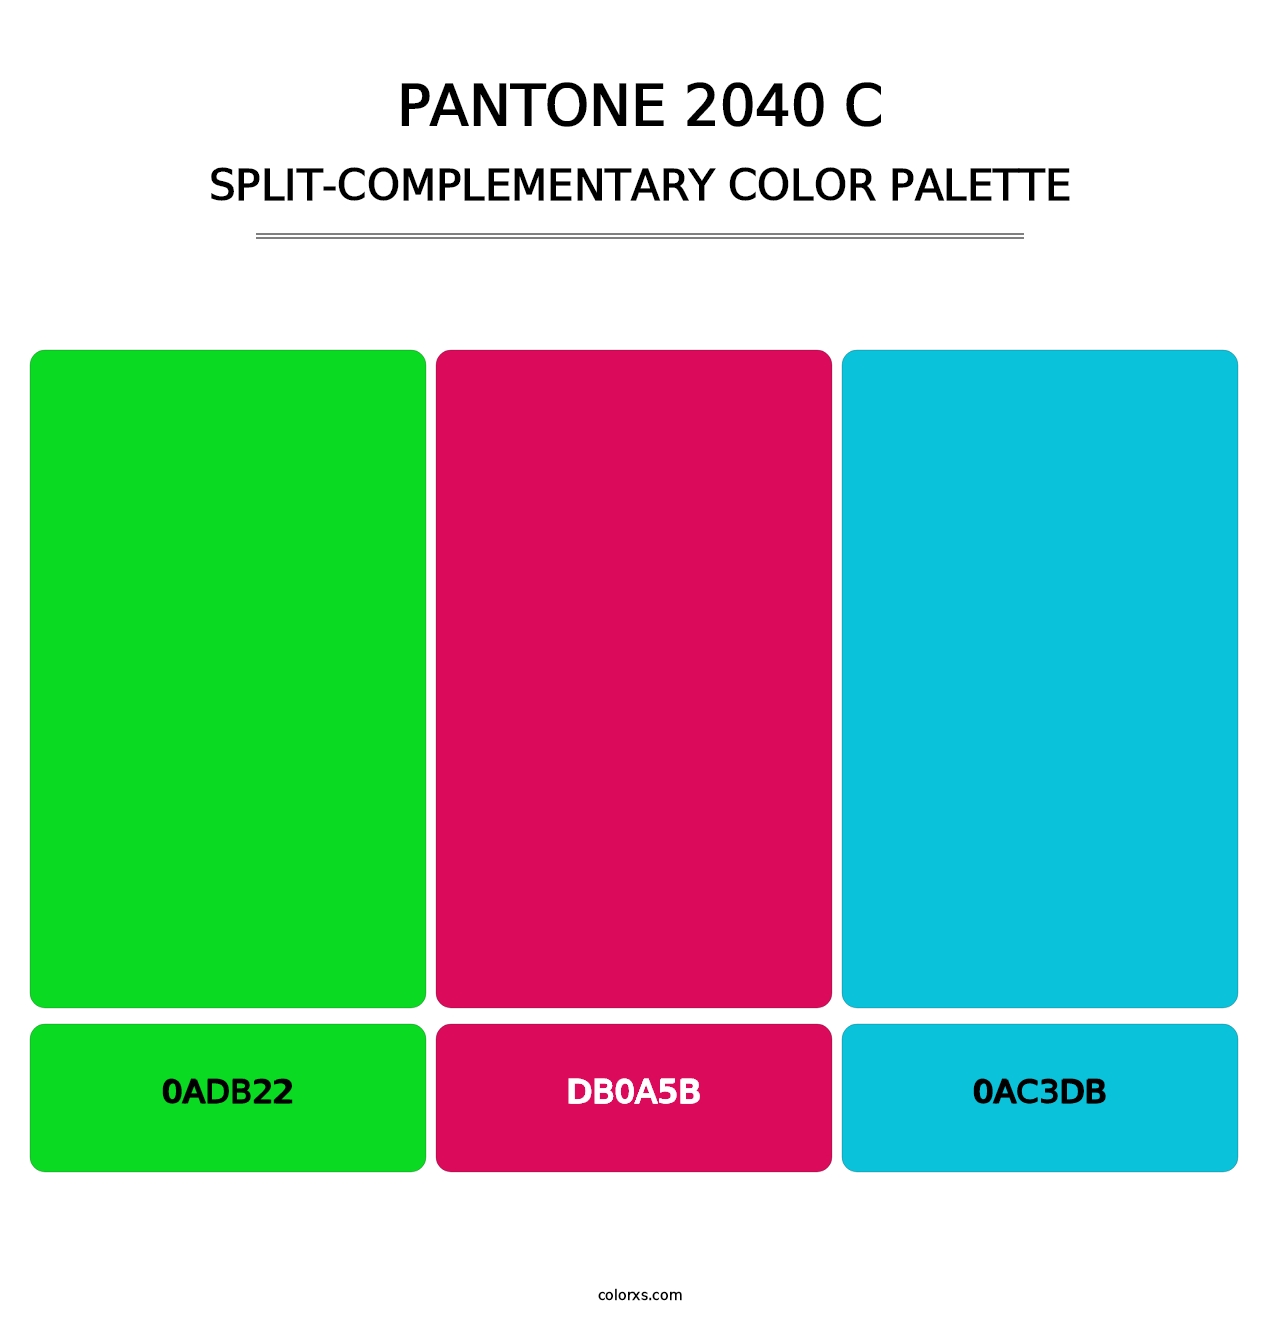 PANTONE 2040 C - Split-Complementary Color Palette